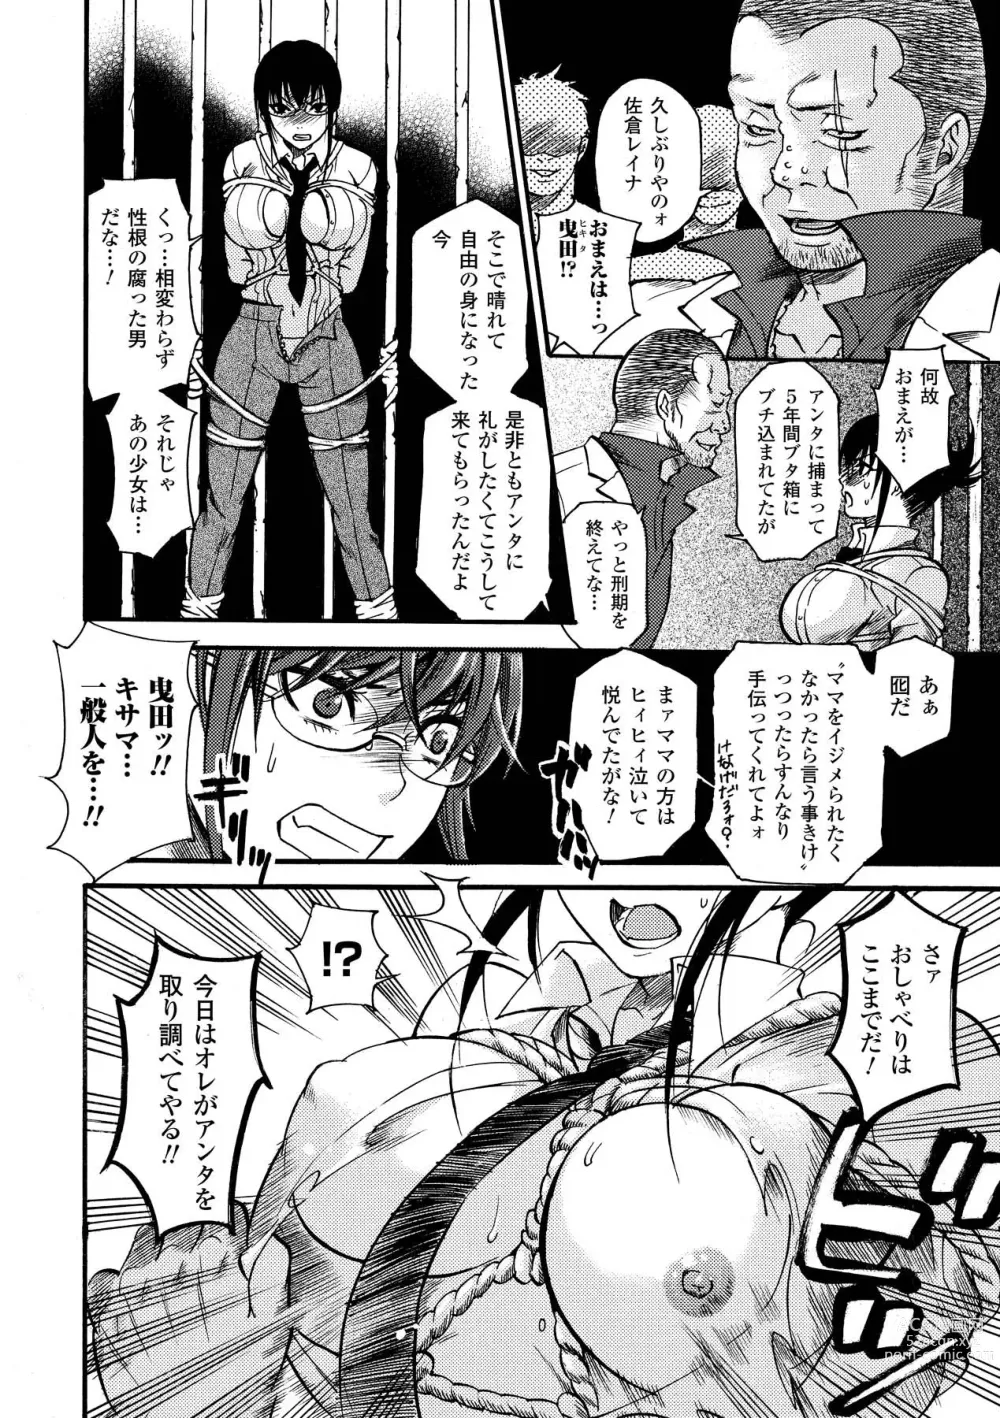 Page 10 of manga Aigan Masochist